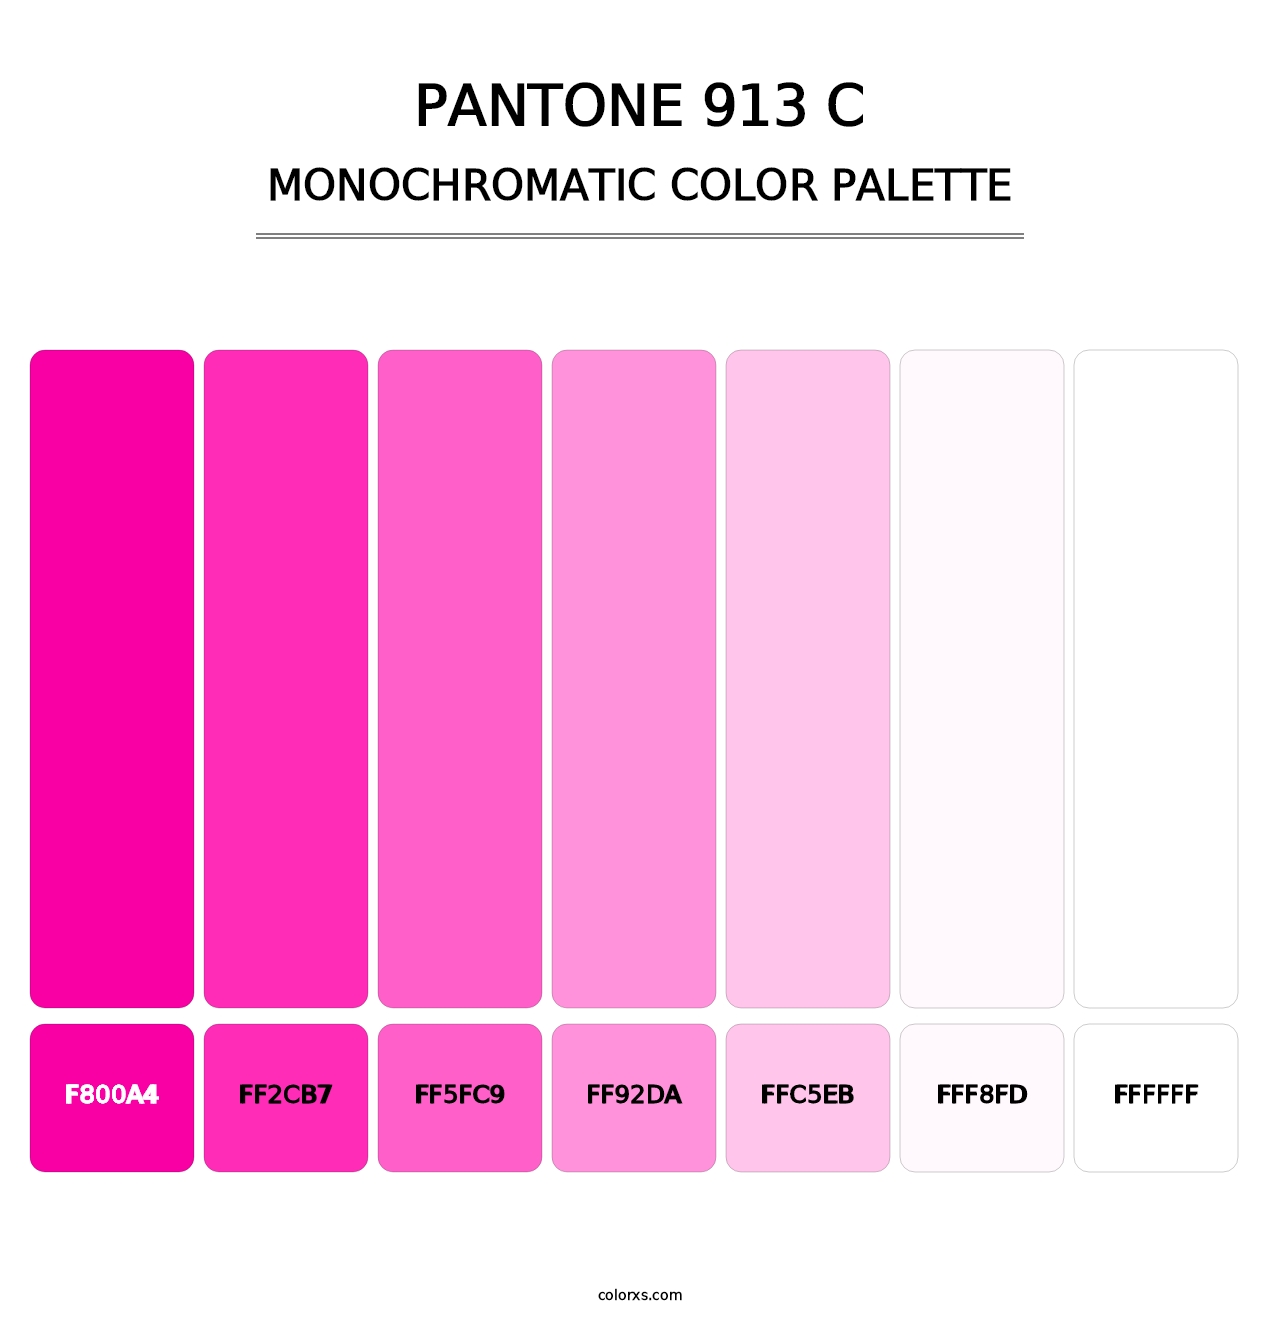 PANTONE 913 C - Monochromatic Color Palette